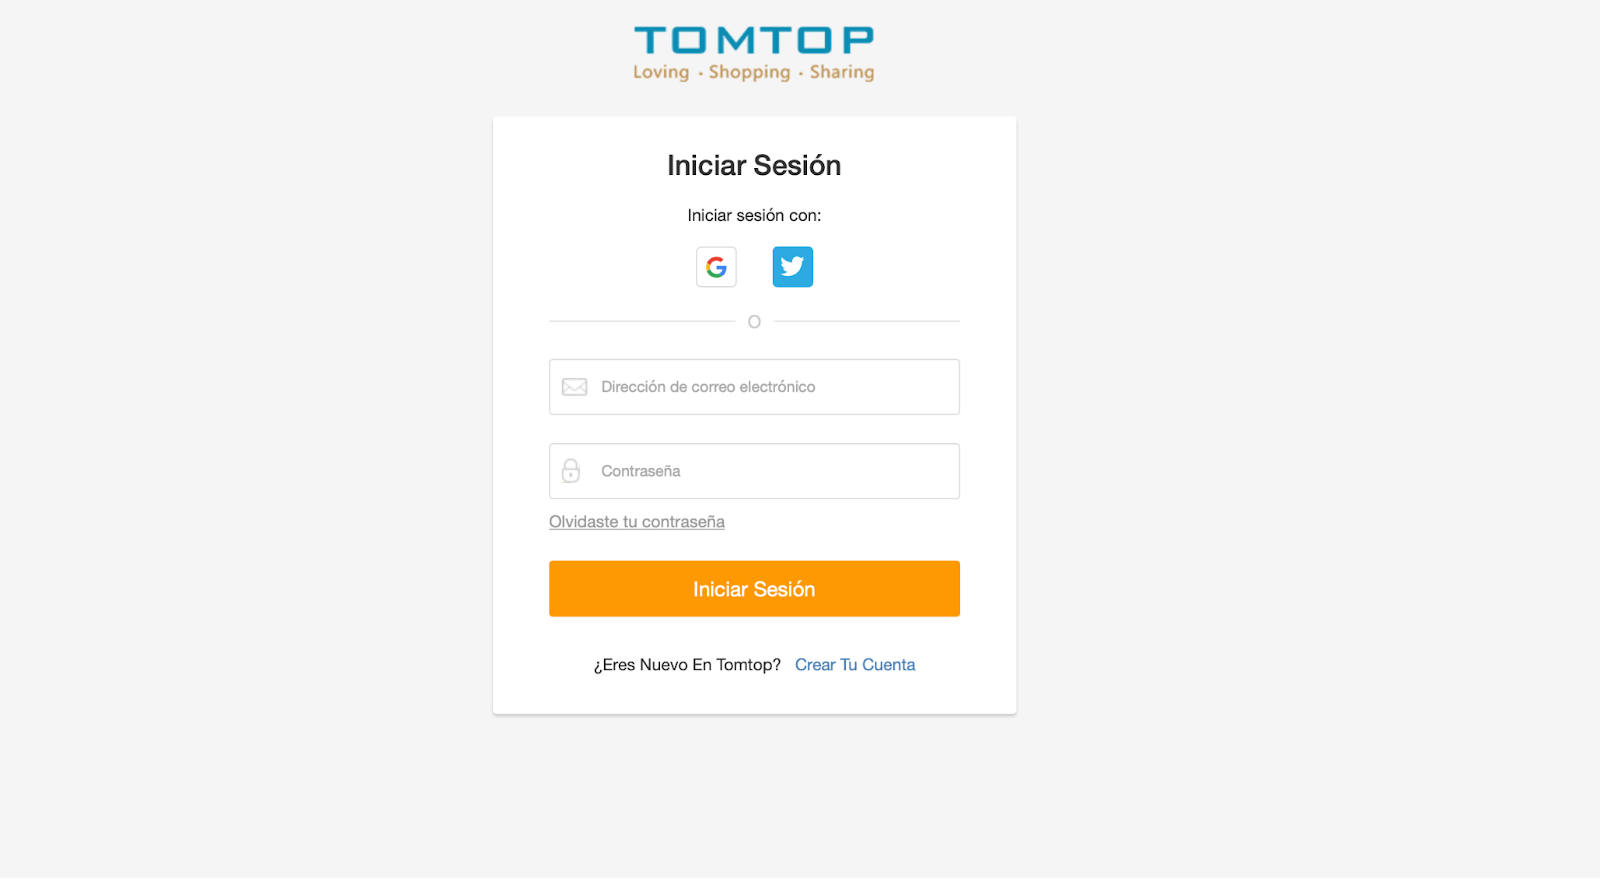 Imagen 10: Usar código promocional en Tomtop